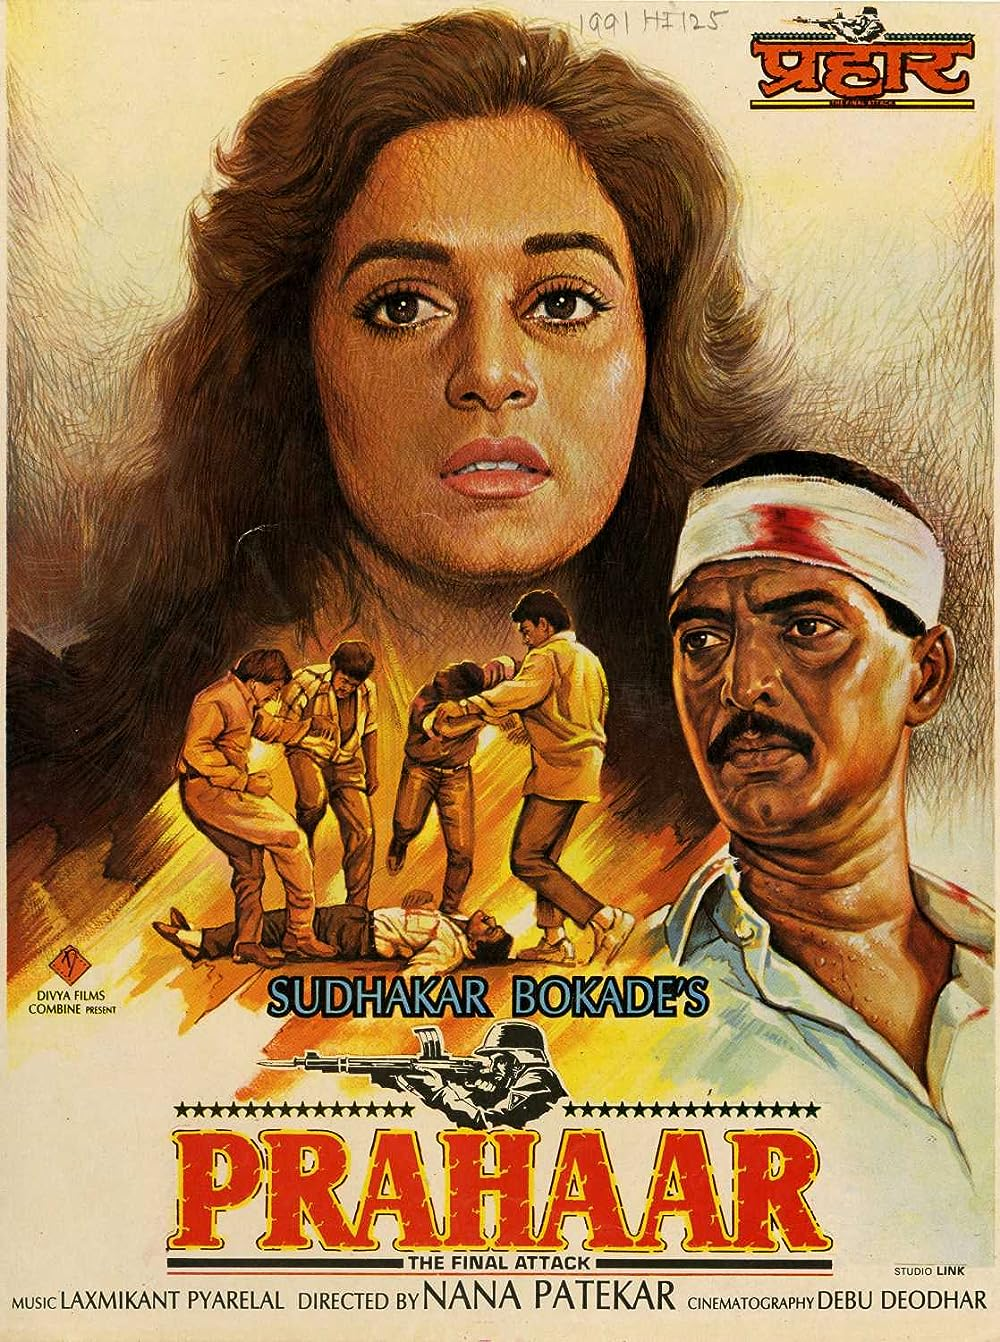 prahaar- Best Patriotic Movies Bollywood